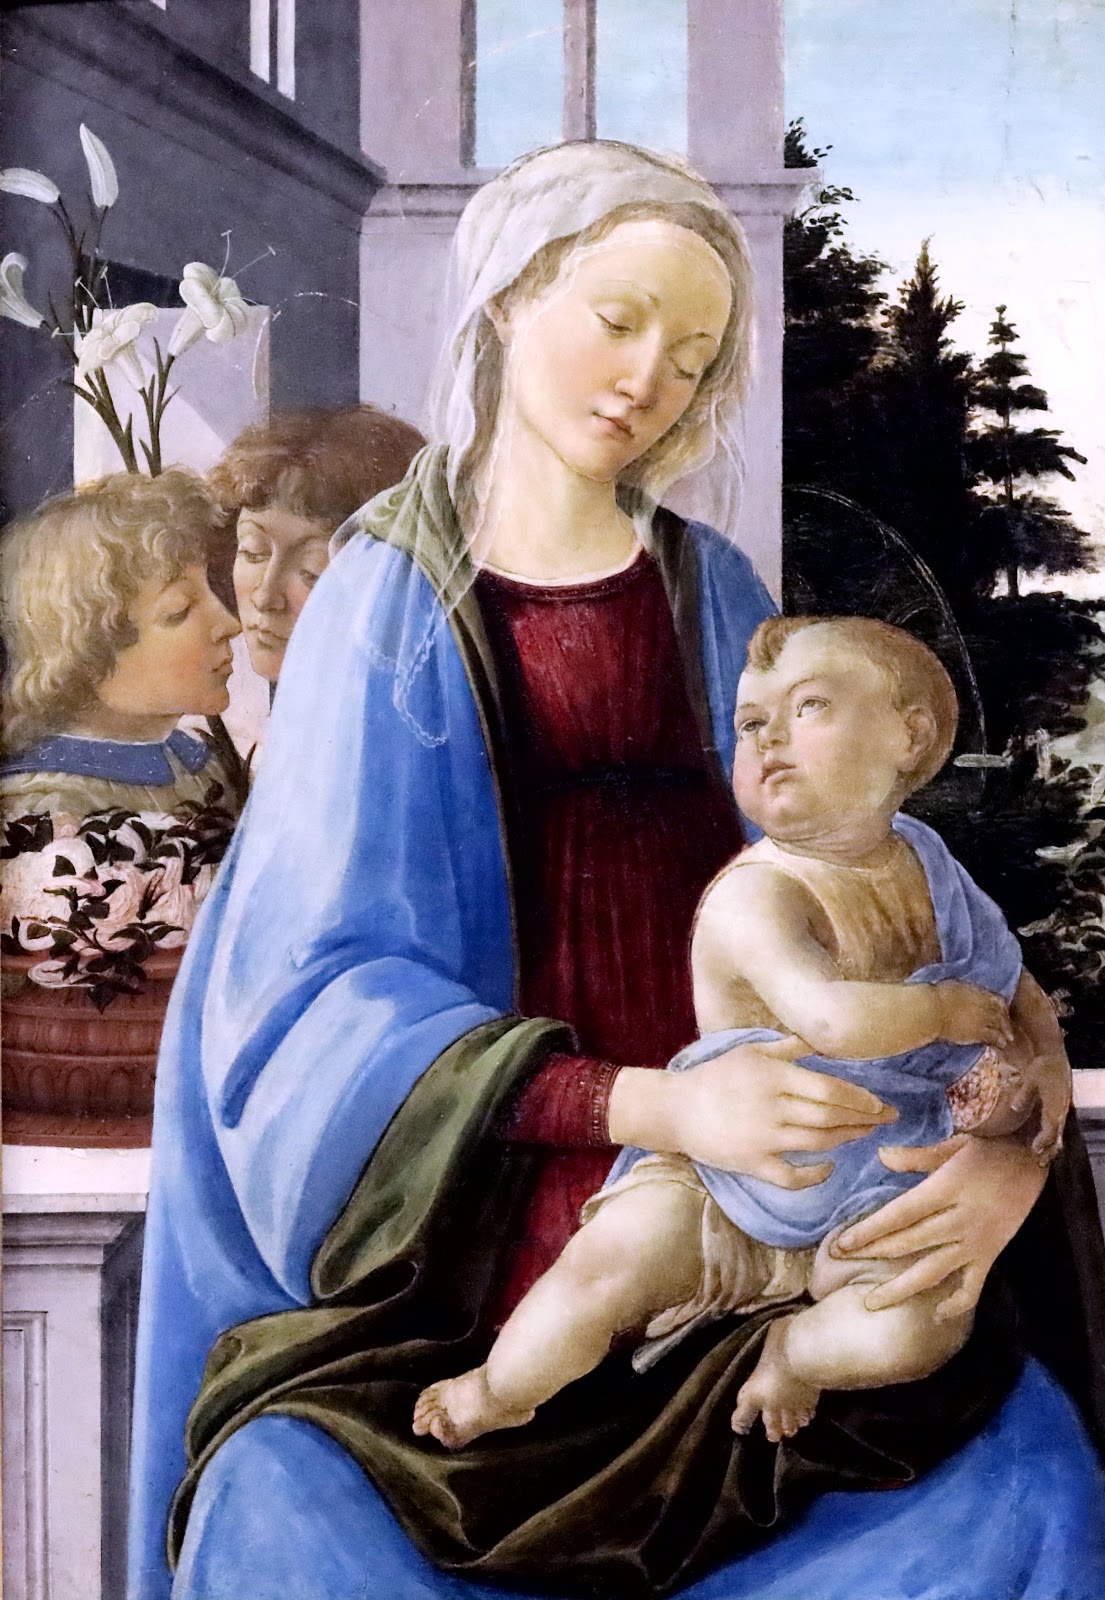 Filippino+Lippi-1457-1504 (44).jpg